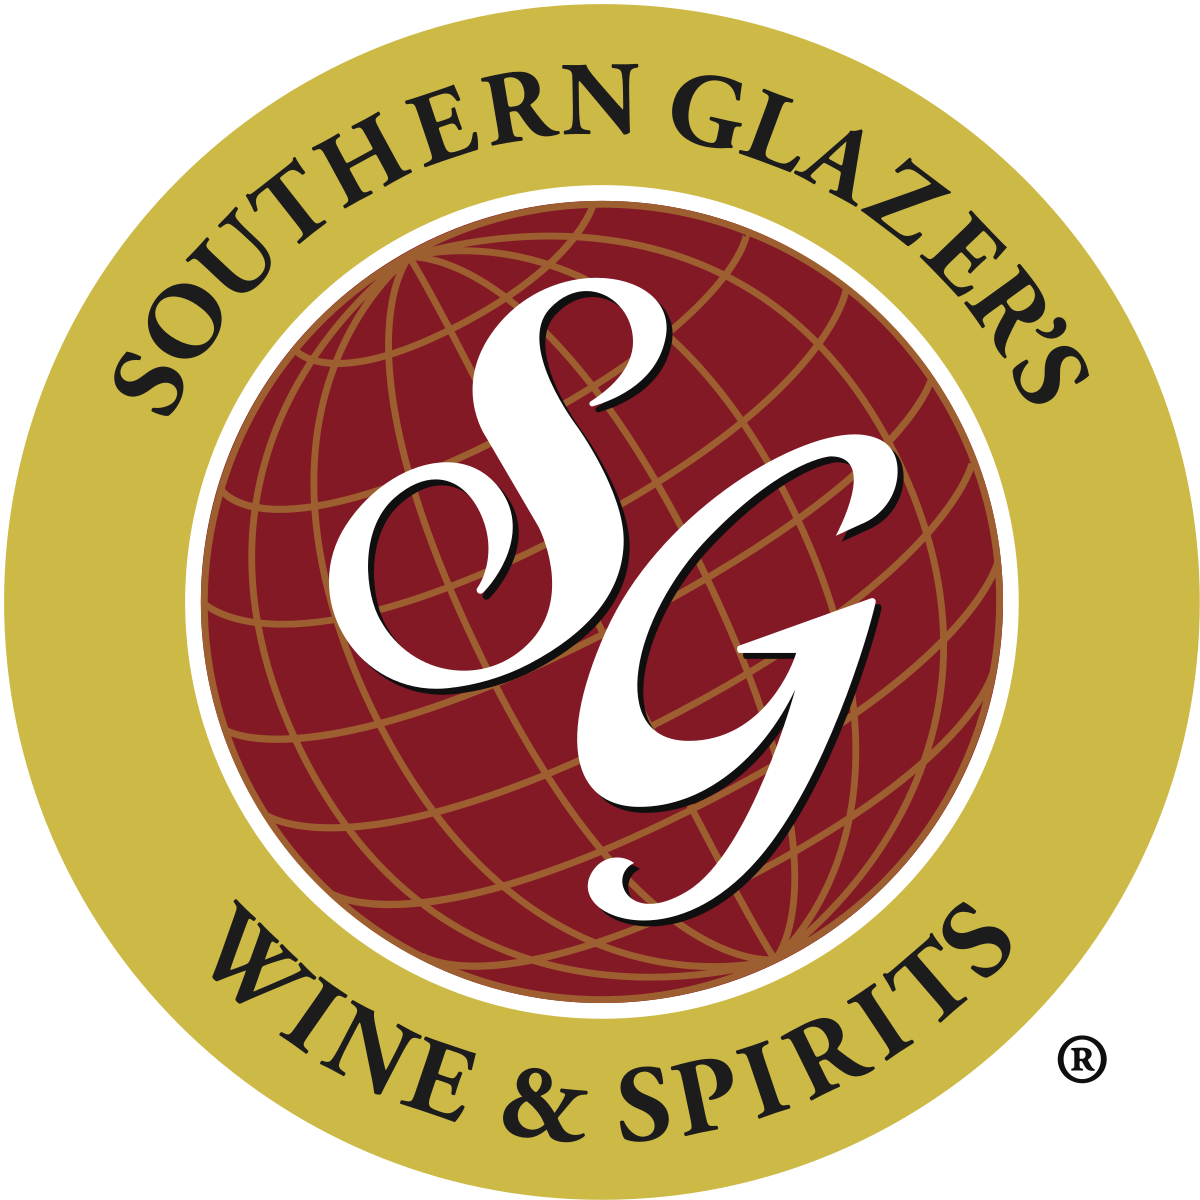 1200px-Southern_Glazer's_Wine_&_Spirits_Logo.svg.png